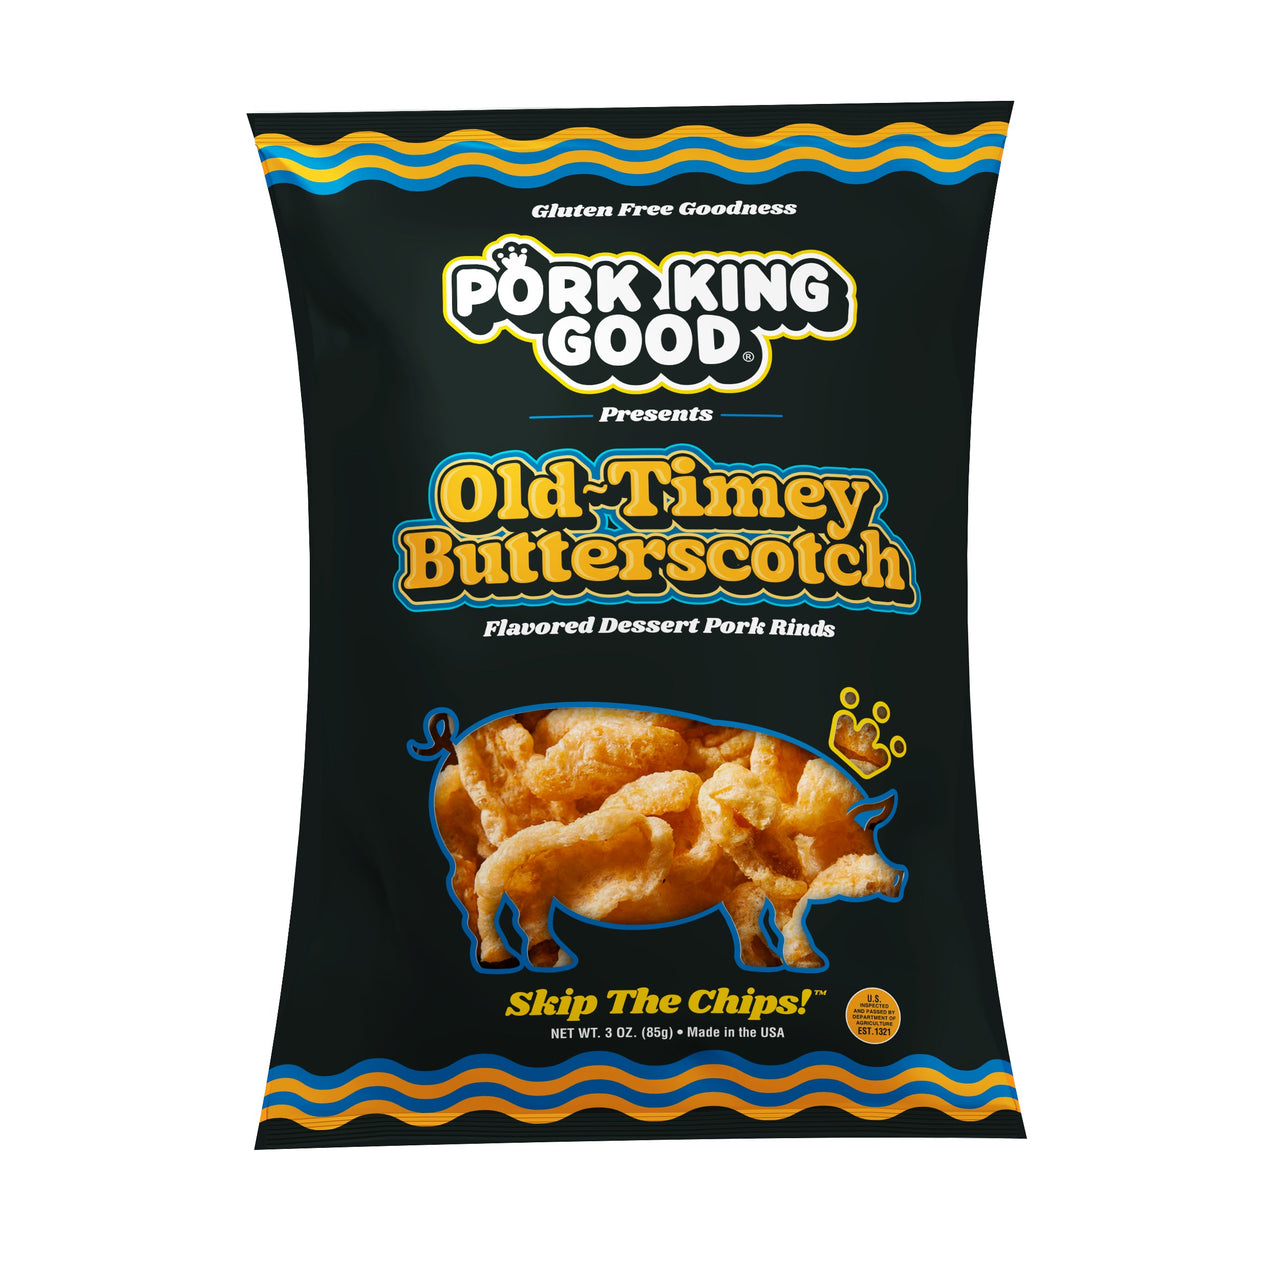 Pork King Good Old Timey Butterscotch Pork Rinds 3 oz - Single Bag